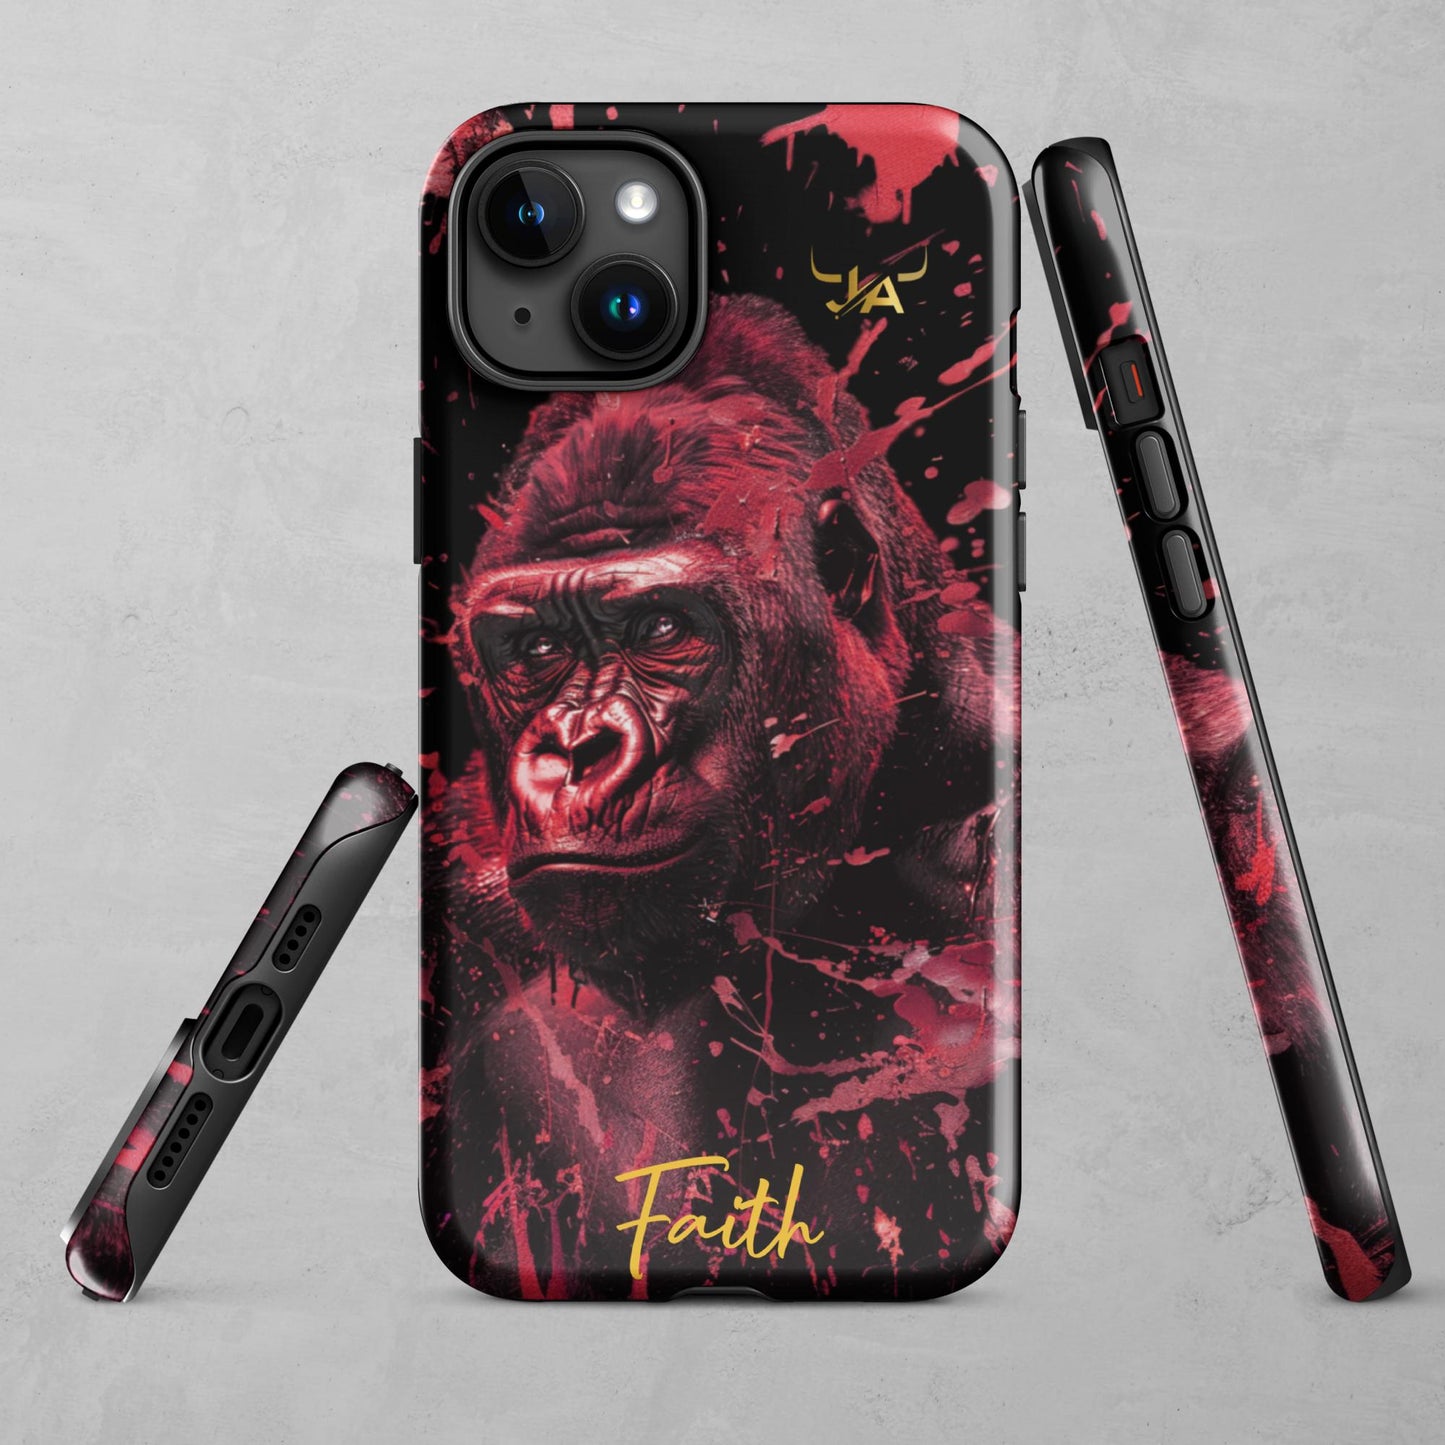 J.A Faith Red Gorilla Tough Case for iPhone®